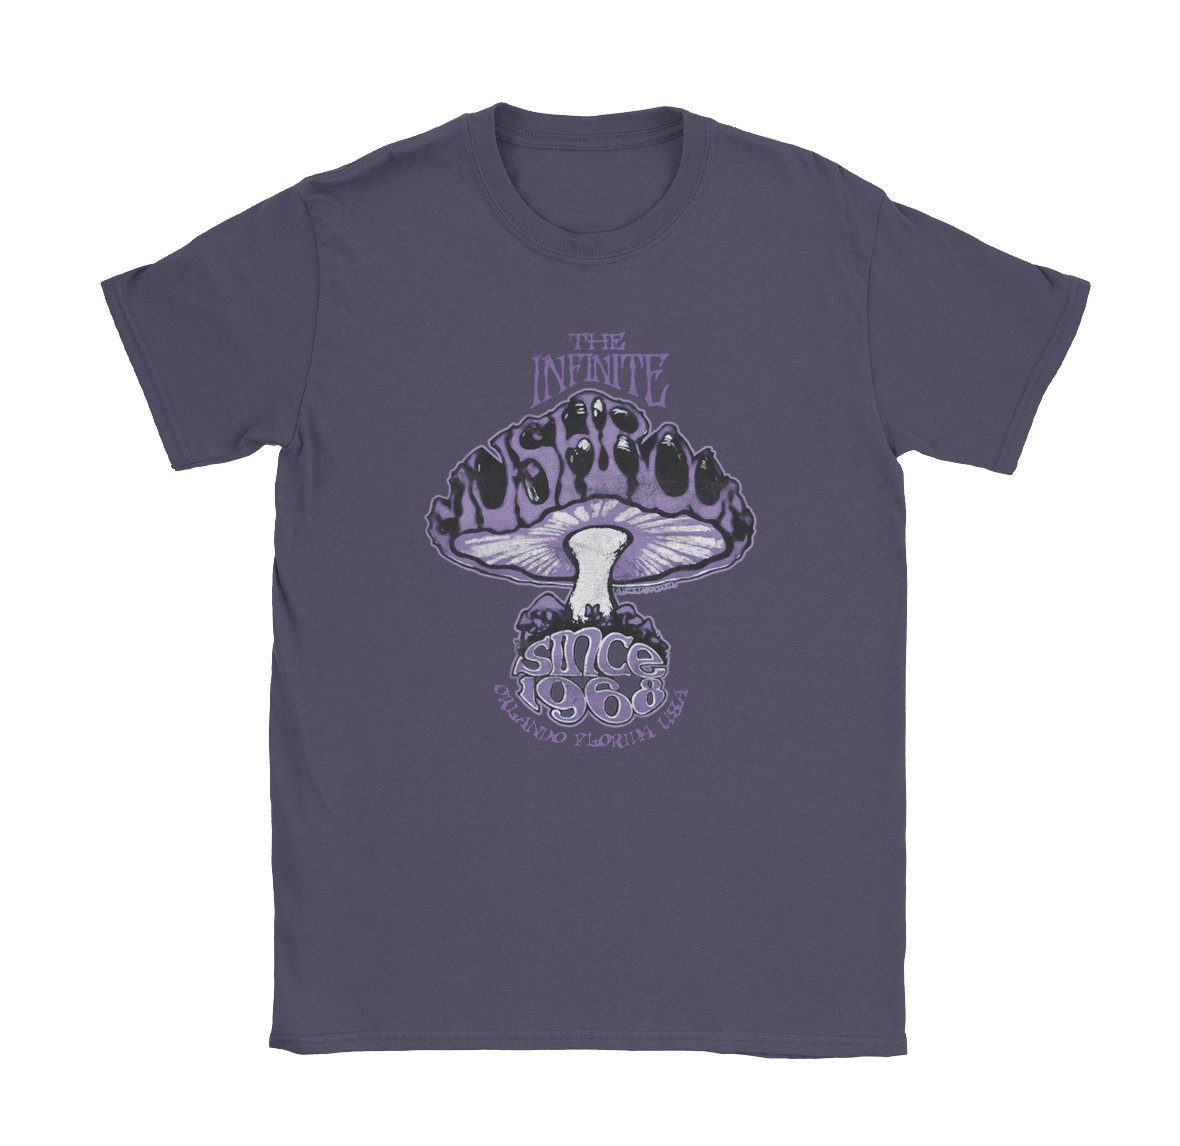 The Infinite Mushroom - Black Cat MFG - T-Shirt